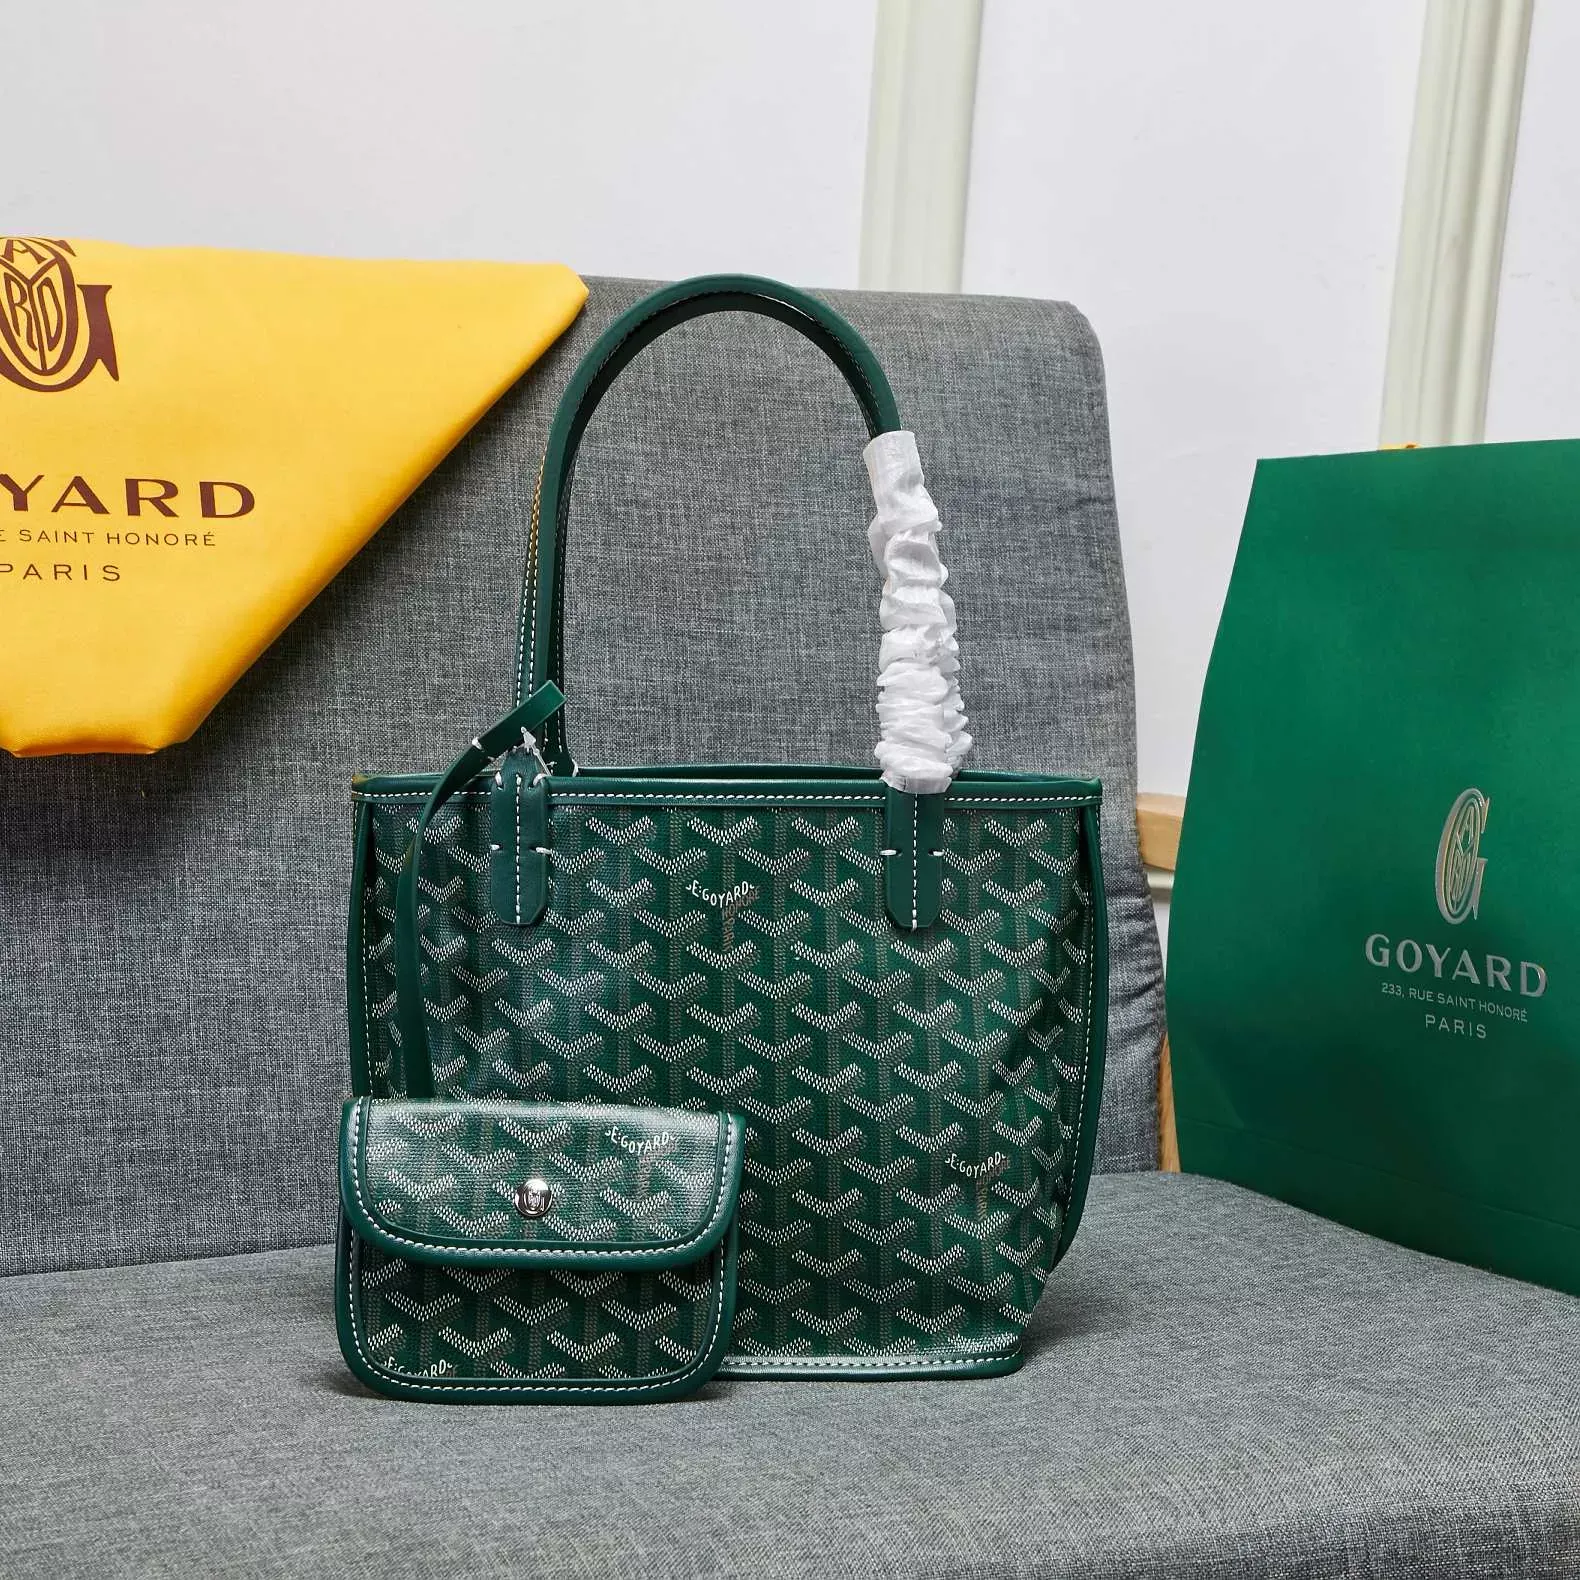 Goyard Belvedere Saddle Bag PM … curated on LTK